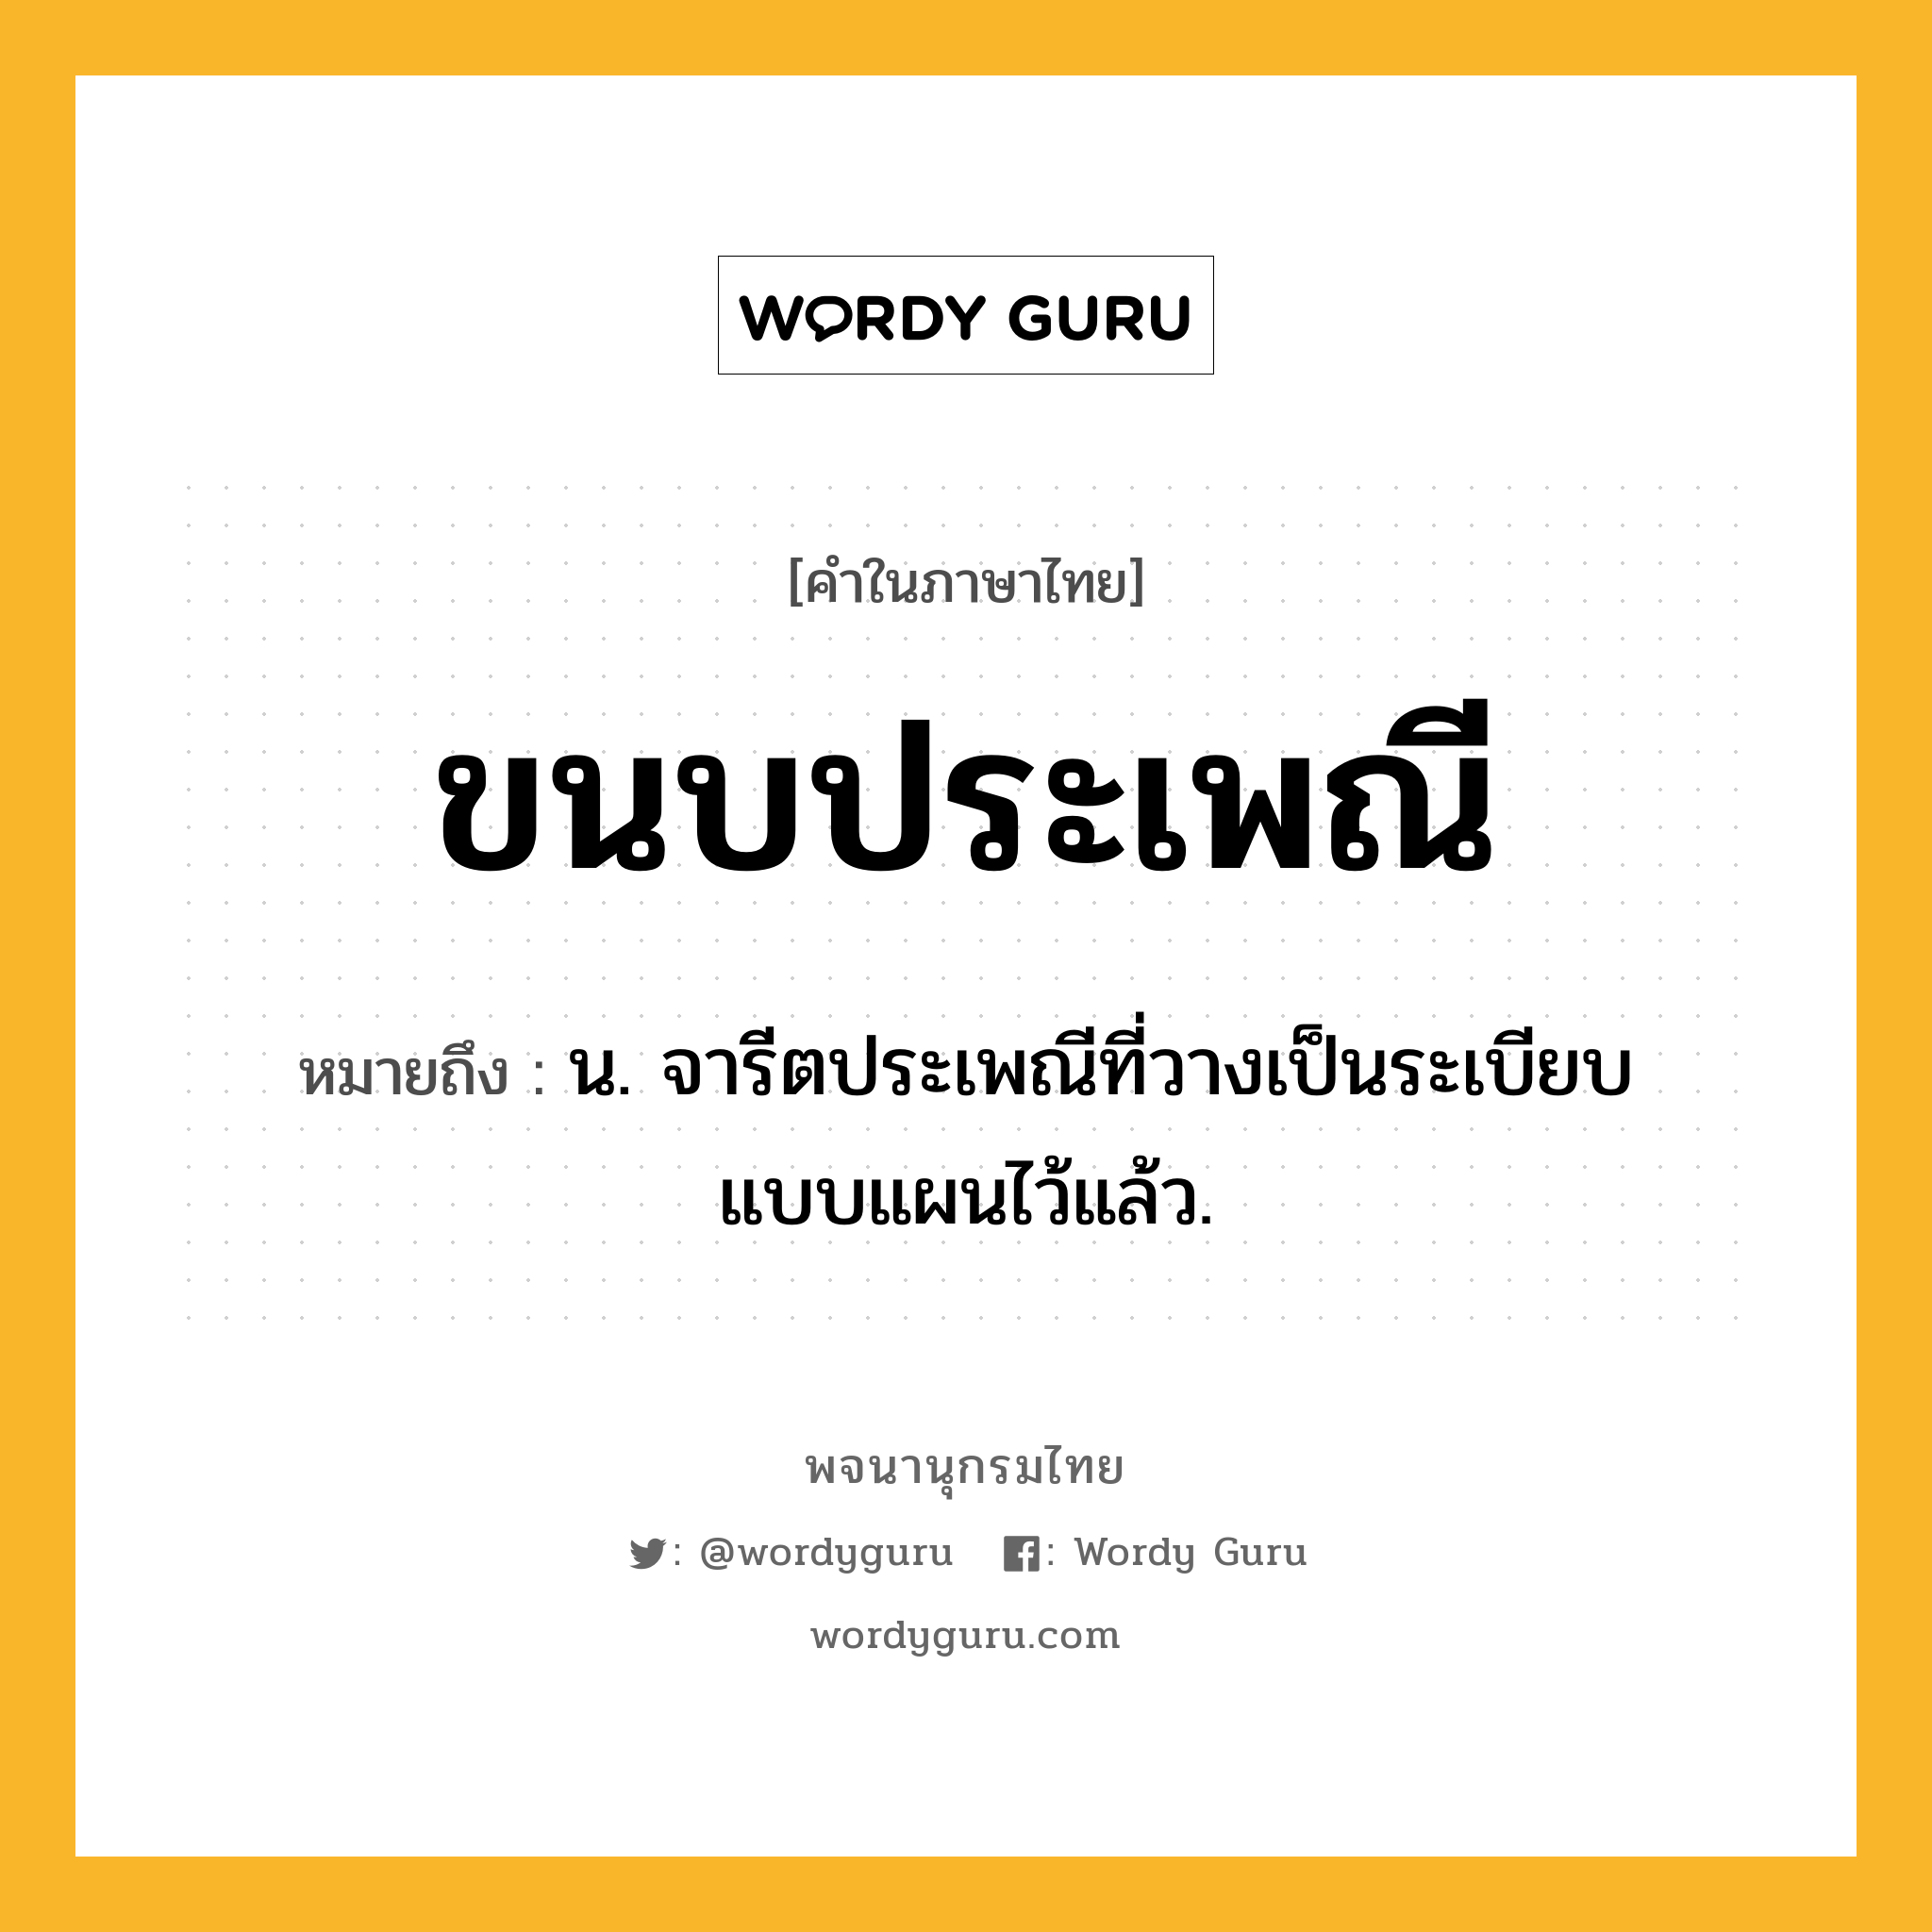 ขนบประเพณี หมายถึงอะไร?, คำในภาษาไทย ขนบประเพณี หมายถึง น. จารีตประเพณีที่วางเป็นระเบียบแบบแผนไว้แล้ว.